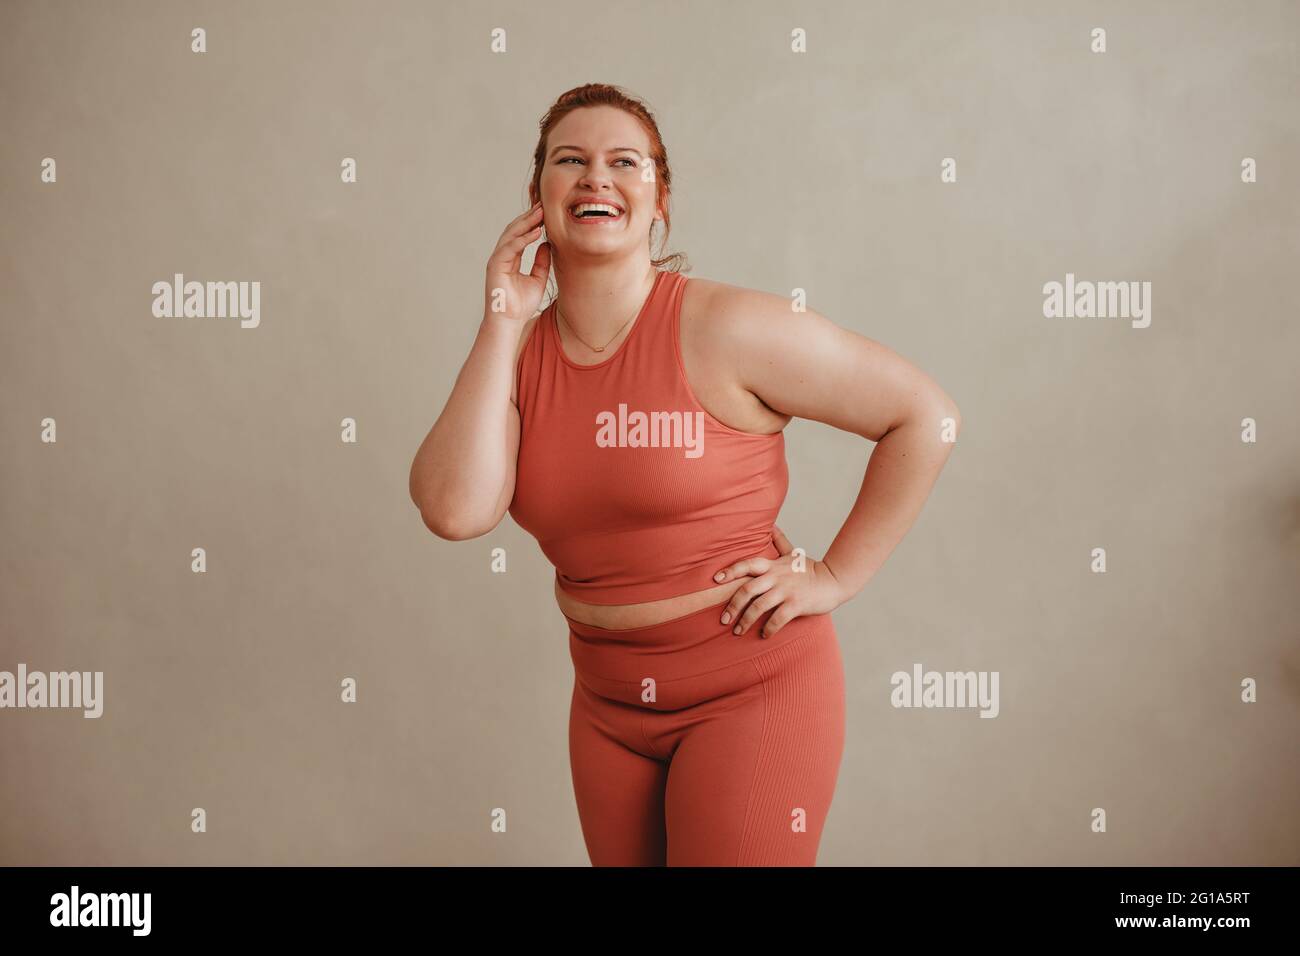 Selbstbewusste Frau in Sportkleidung, die wegschaut und lächelt. Gesunde und große Frau, die im Fitnessstudio gegen eine Wand steht. Stockfoto